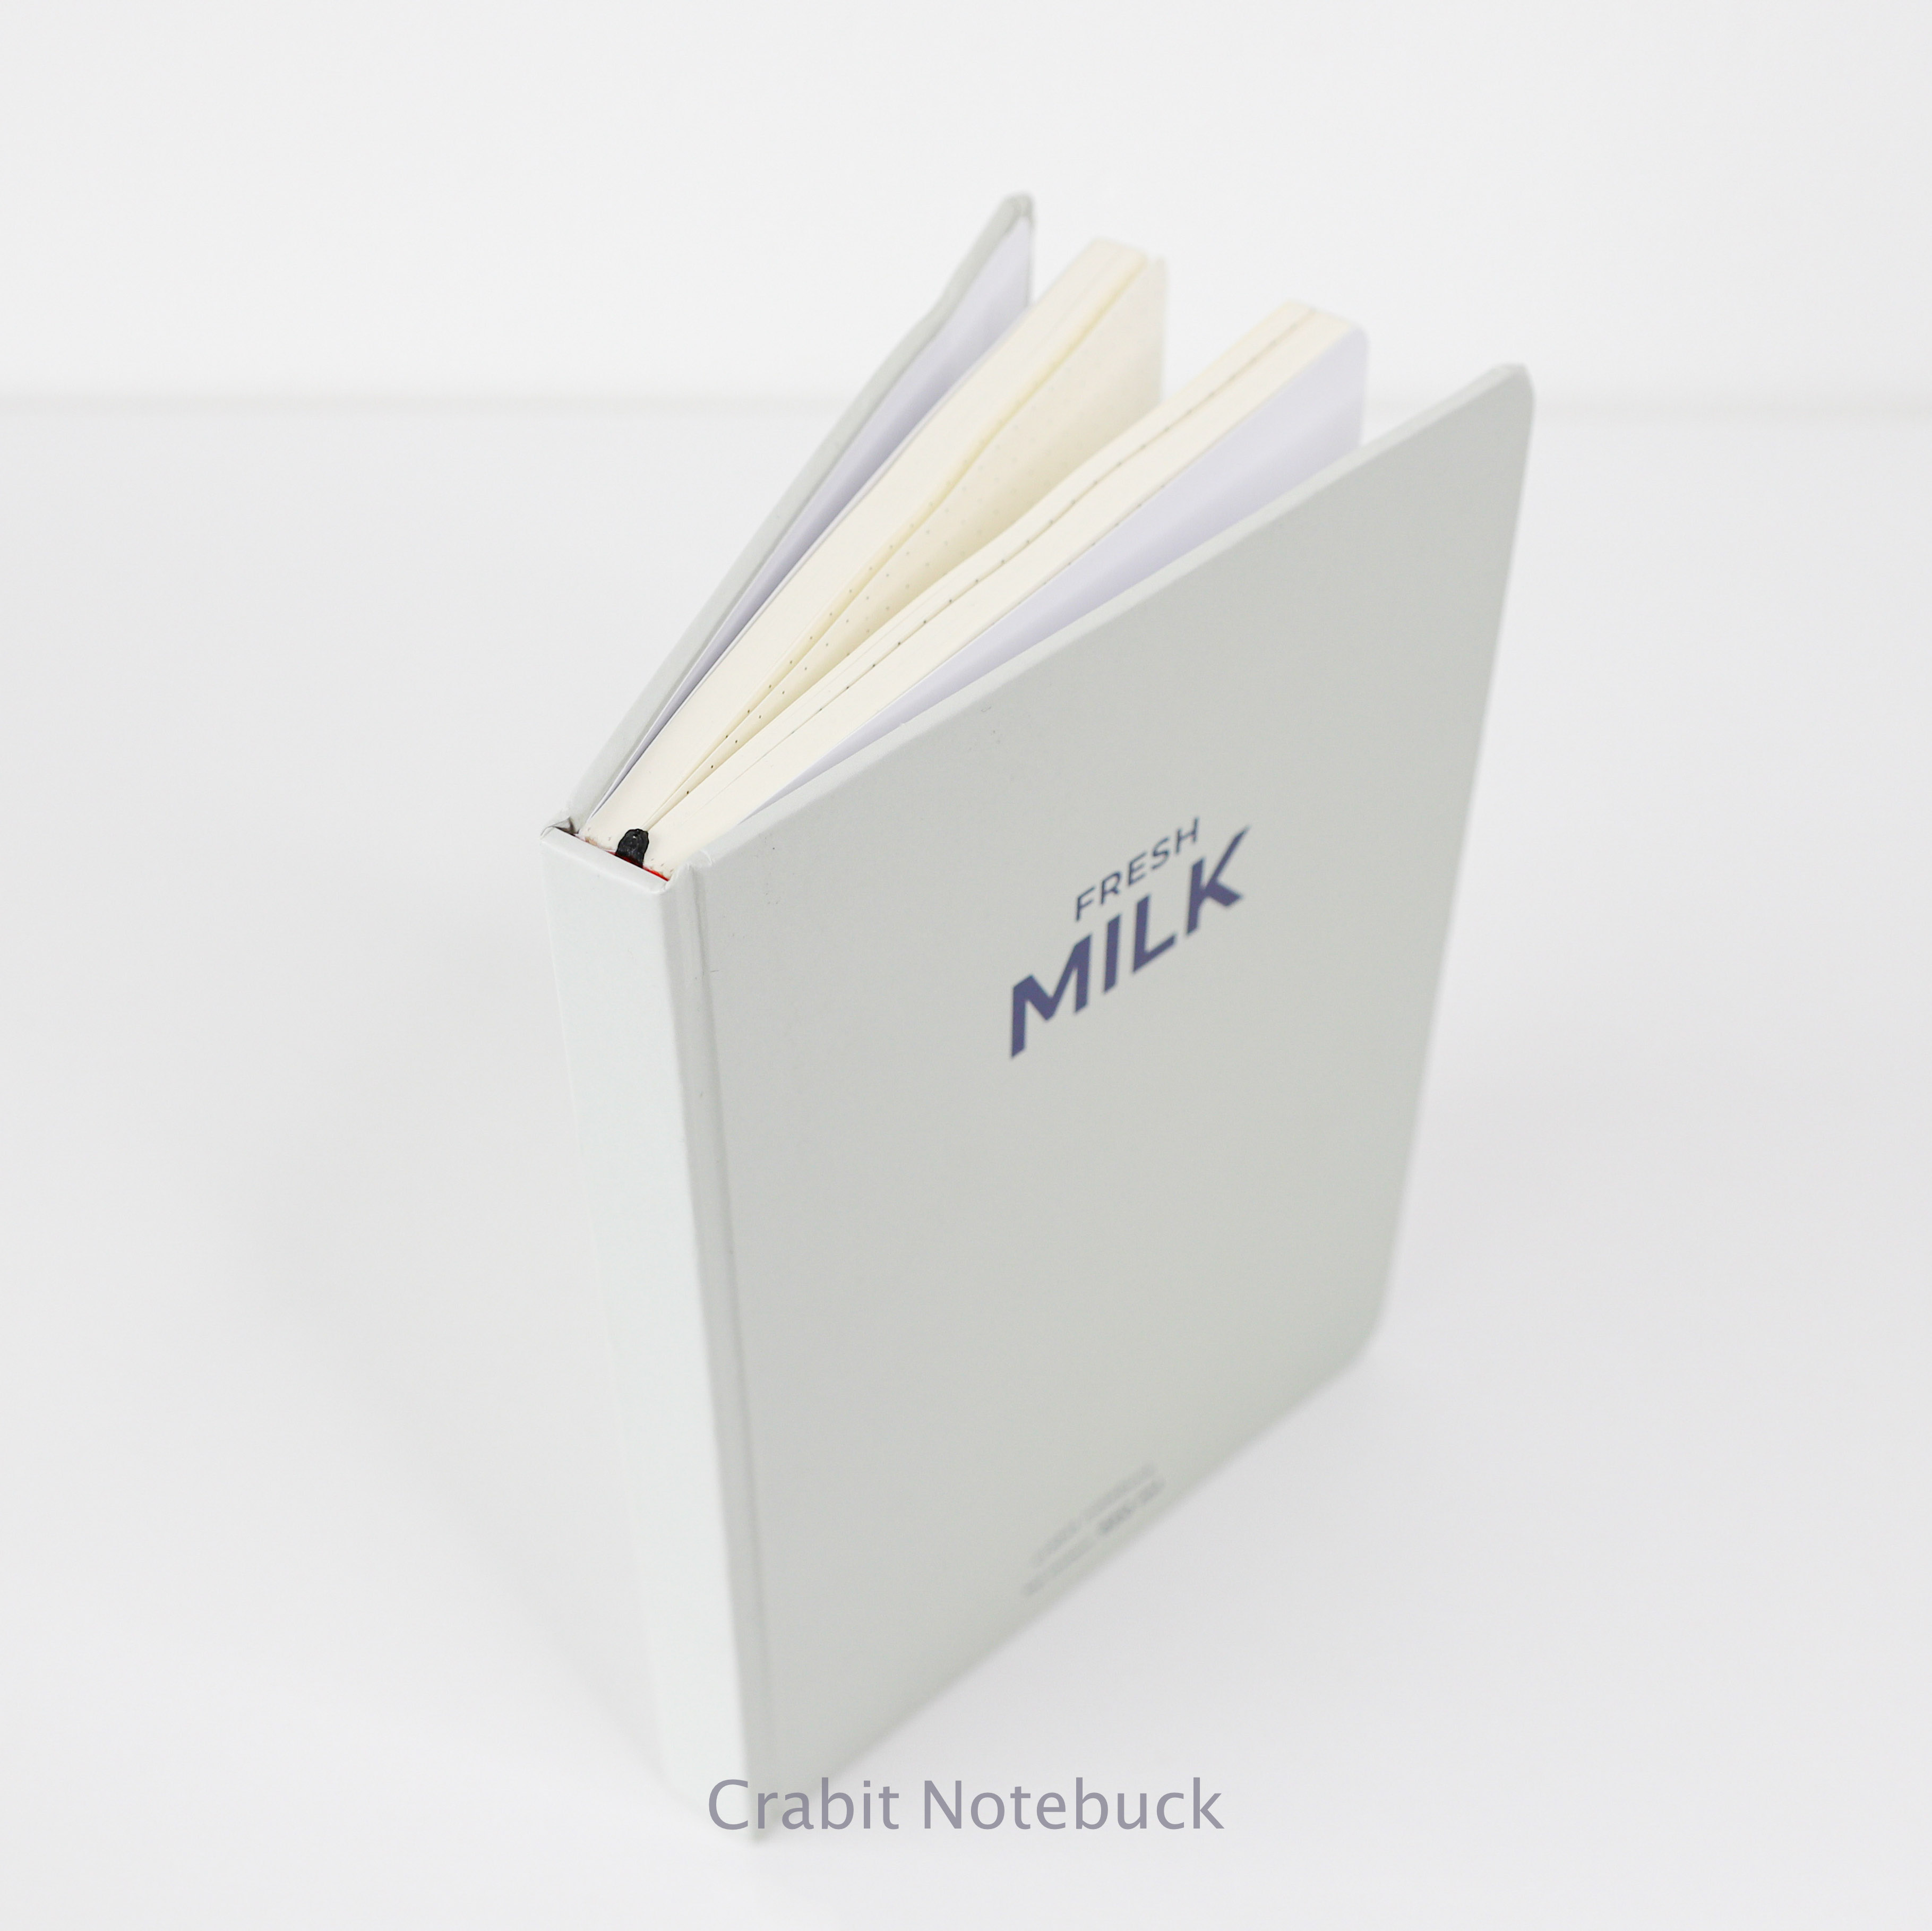 Sổ tay dotgrid Crabit - Milk Collection - Sổ tay ruột chấm dotgrid, ghi chép, làm bullet journal